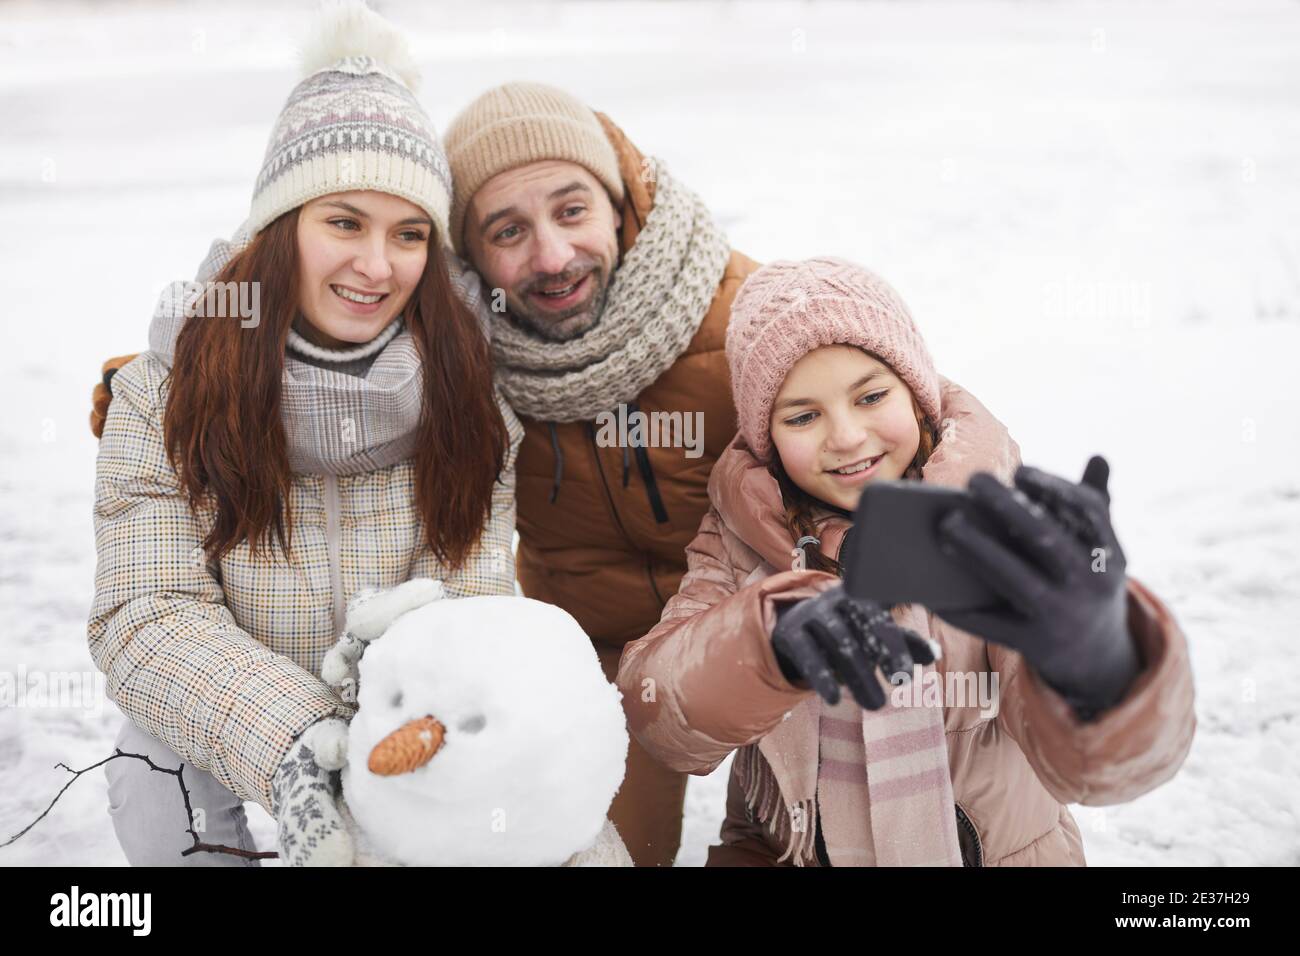 Hochwinkel Porträt der glücklichen Familie Aufnahme Selfie-Foto im Freien Beim Schneemann bauen zusammen und genießen Winterurlaub Stockfoto